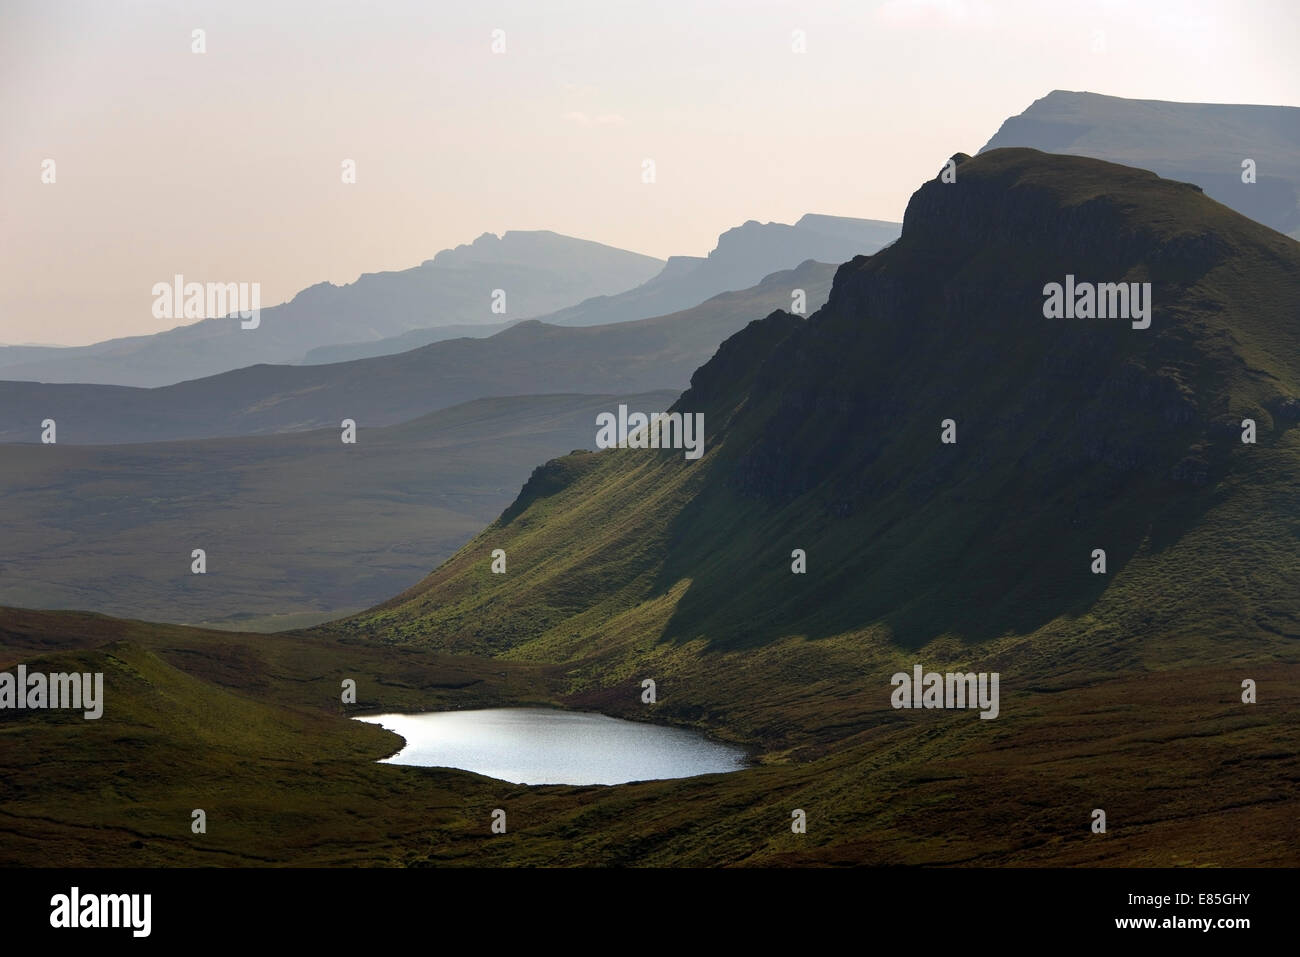 Quiraing, Trotternish Ridge, Isle of Skye, Scotland Stock Photo